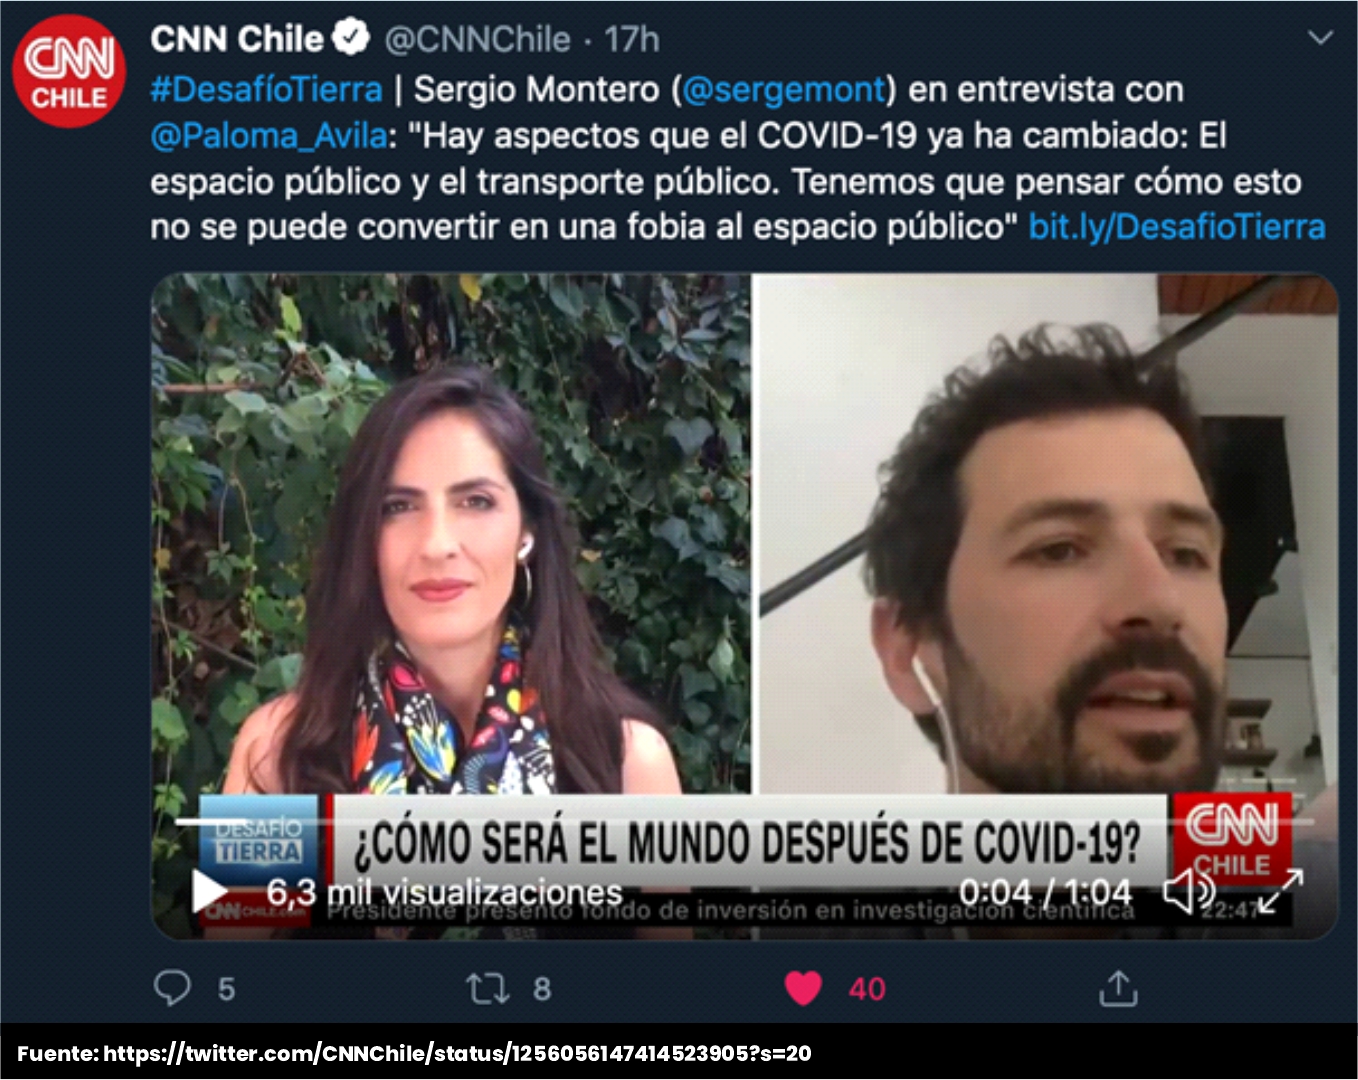 Sergio Montero en CNN Chile. Desafío tierra 3 - Cider | Uniandes